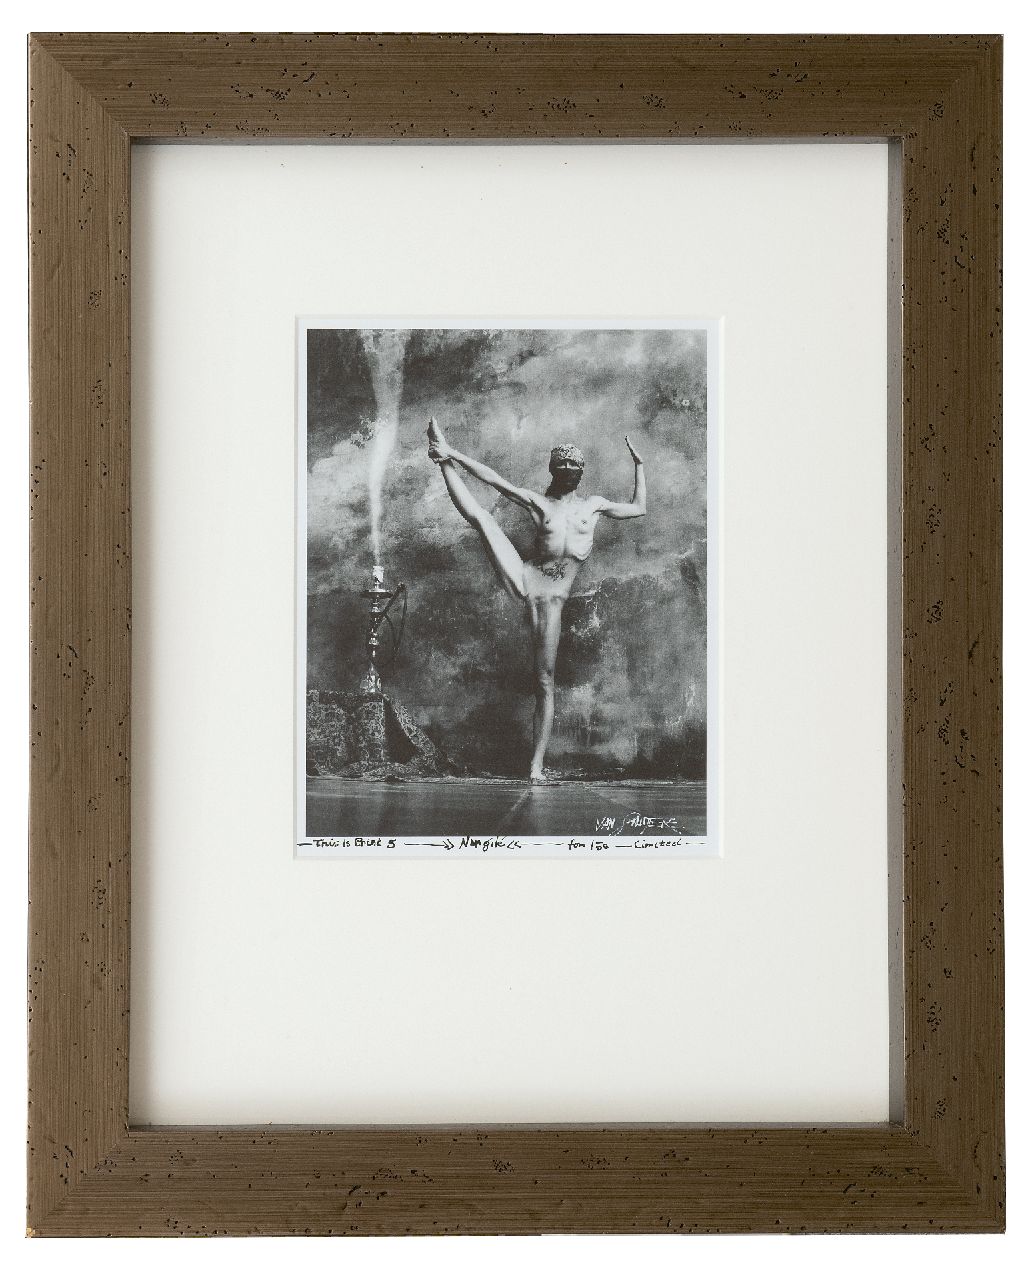 Saudek J.  | Jan Saudek | Grafiek te koop aangeboden | Nargilé, gelatine zilverprint 26,5 x 21,5 cm, gesigneerd rechtsonder en gedateerd Praag 1935